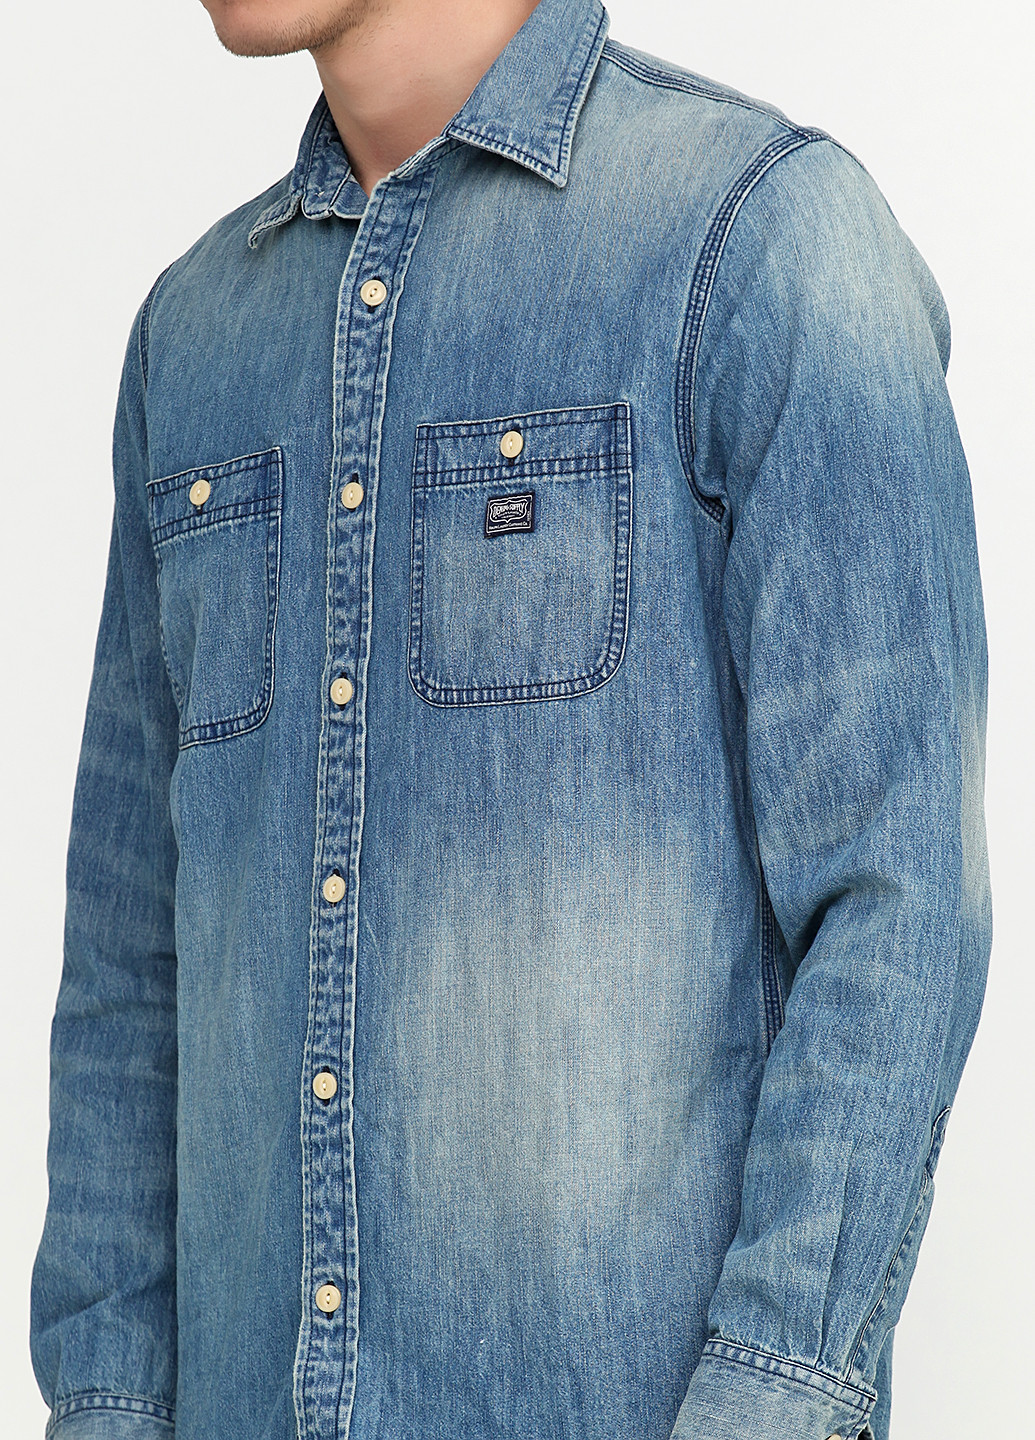 Синяя джинсовая рубашка однотонная Ralph Lauren с длинным рукавом